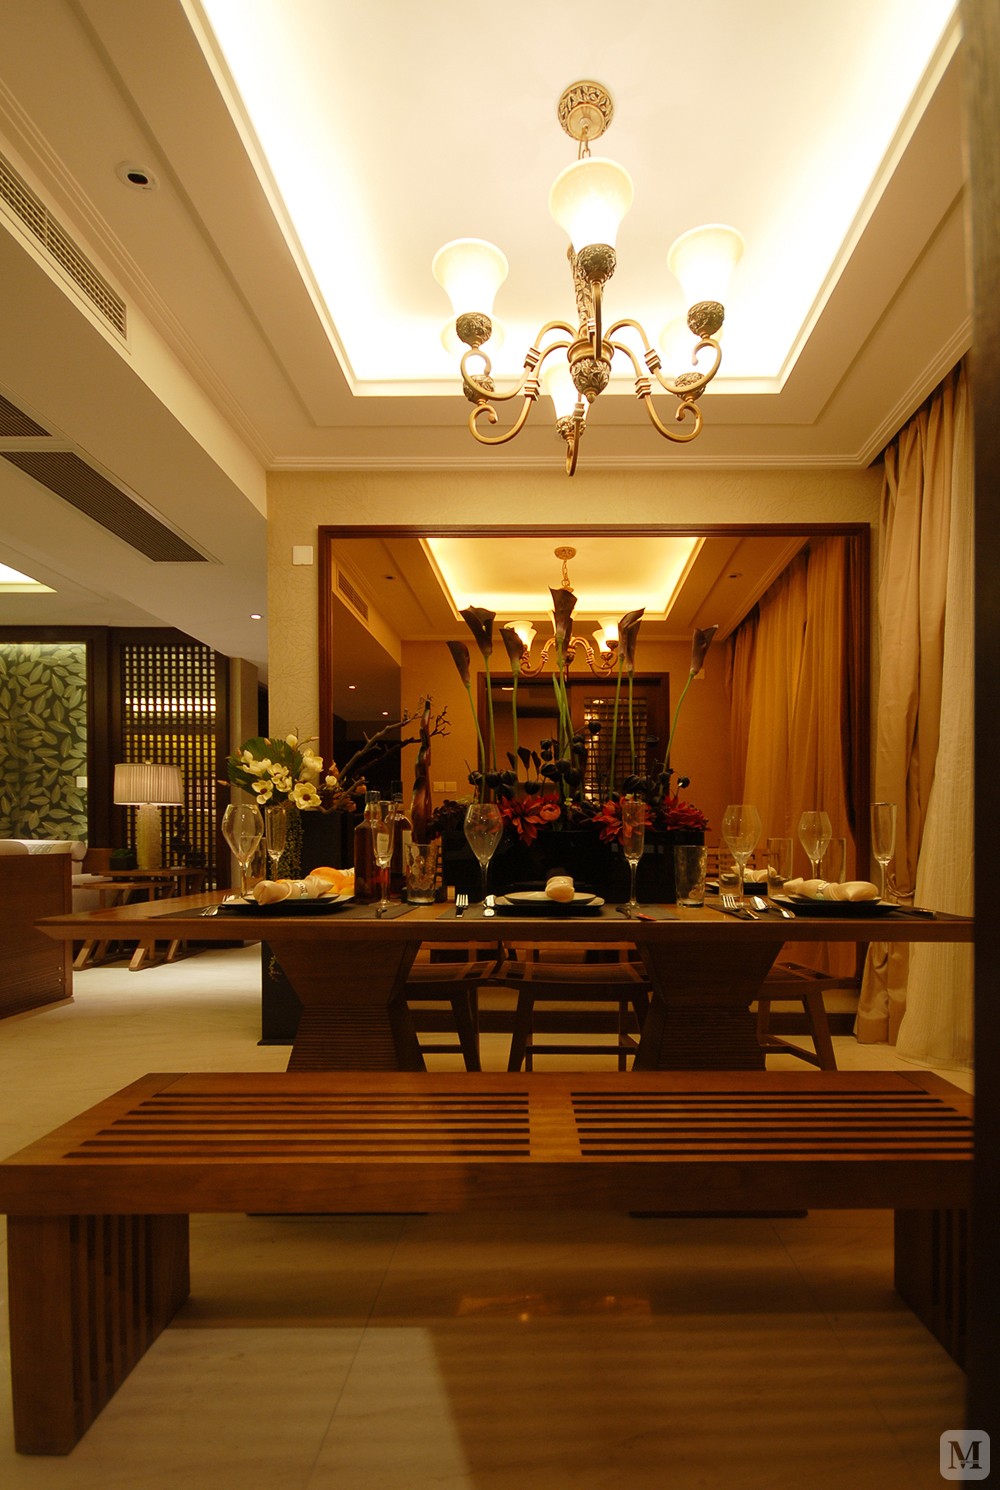 本案例为大户型   150平方公寓设计   三室二厅一厨二卫 东南亚  混搭风格。卧室的设计给整个空间增加了异域风格。